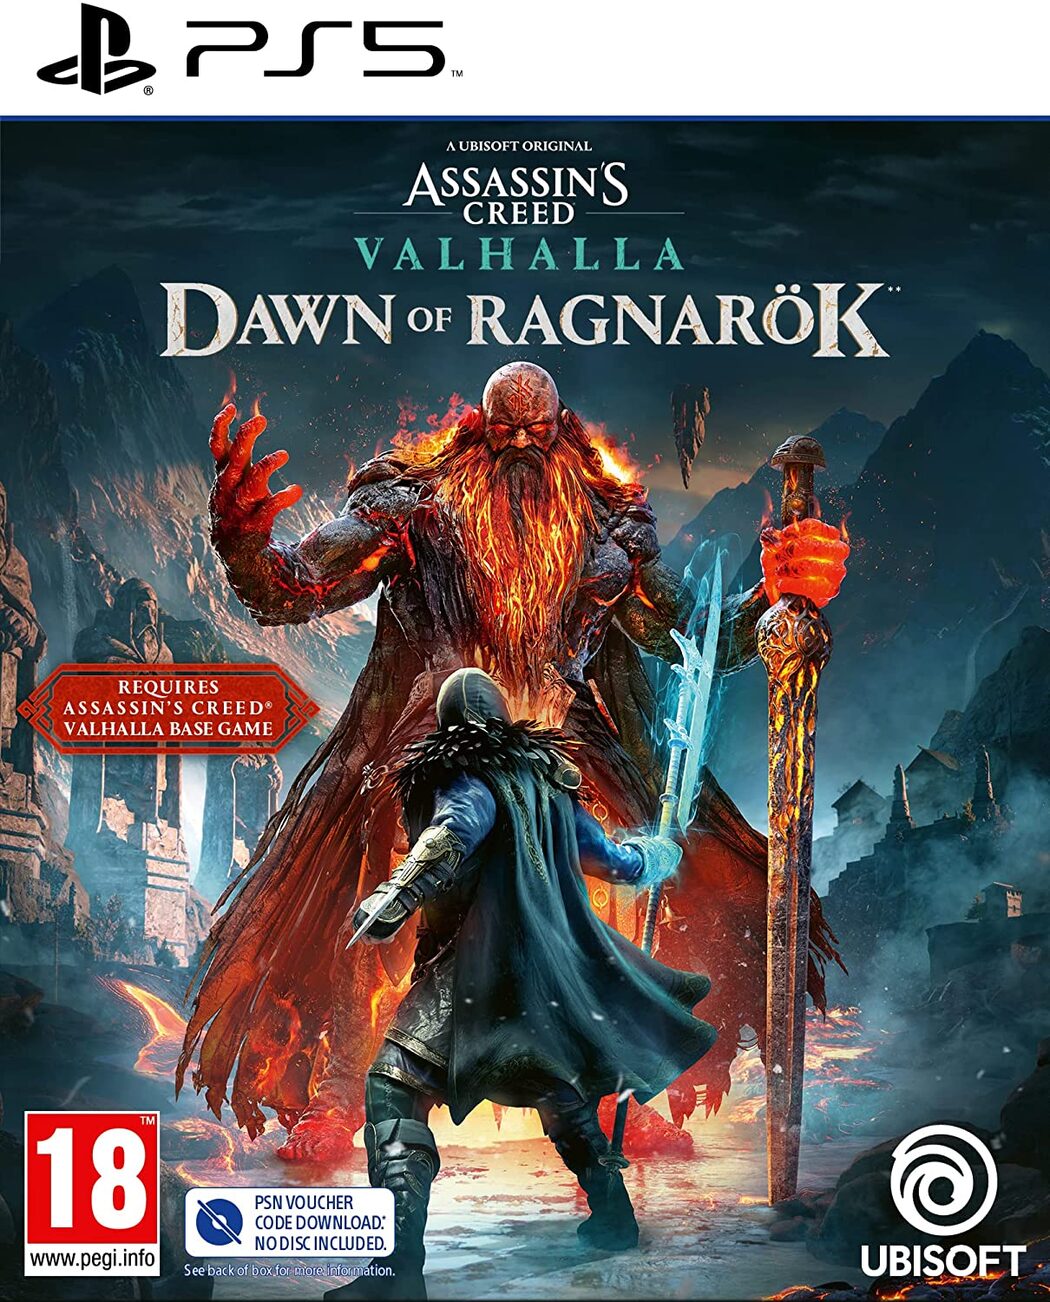 Assassin's Creed Valhalla Dawn of Ragnarok PSN key